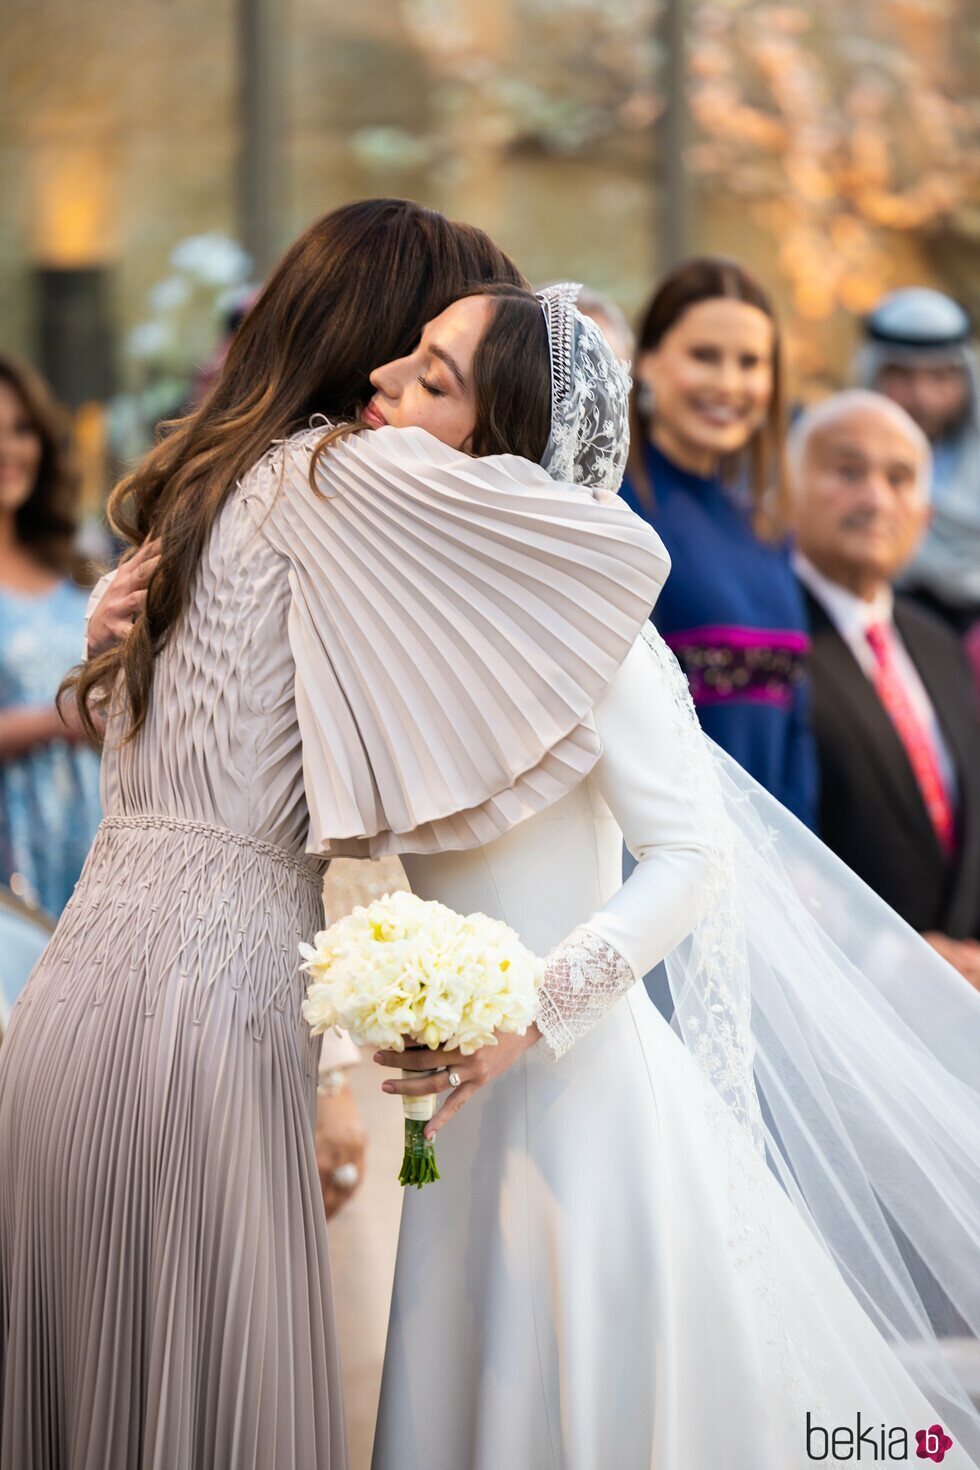 Rania de Jordania besa a su hija Iman de Jordania en su boda con Jameel Alexander Thermiotis